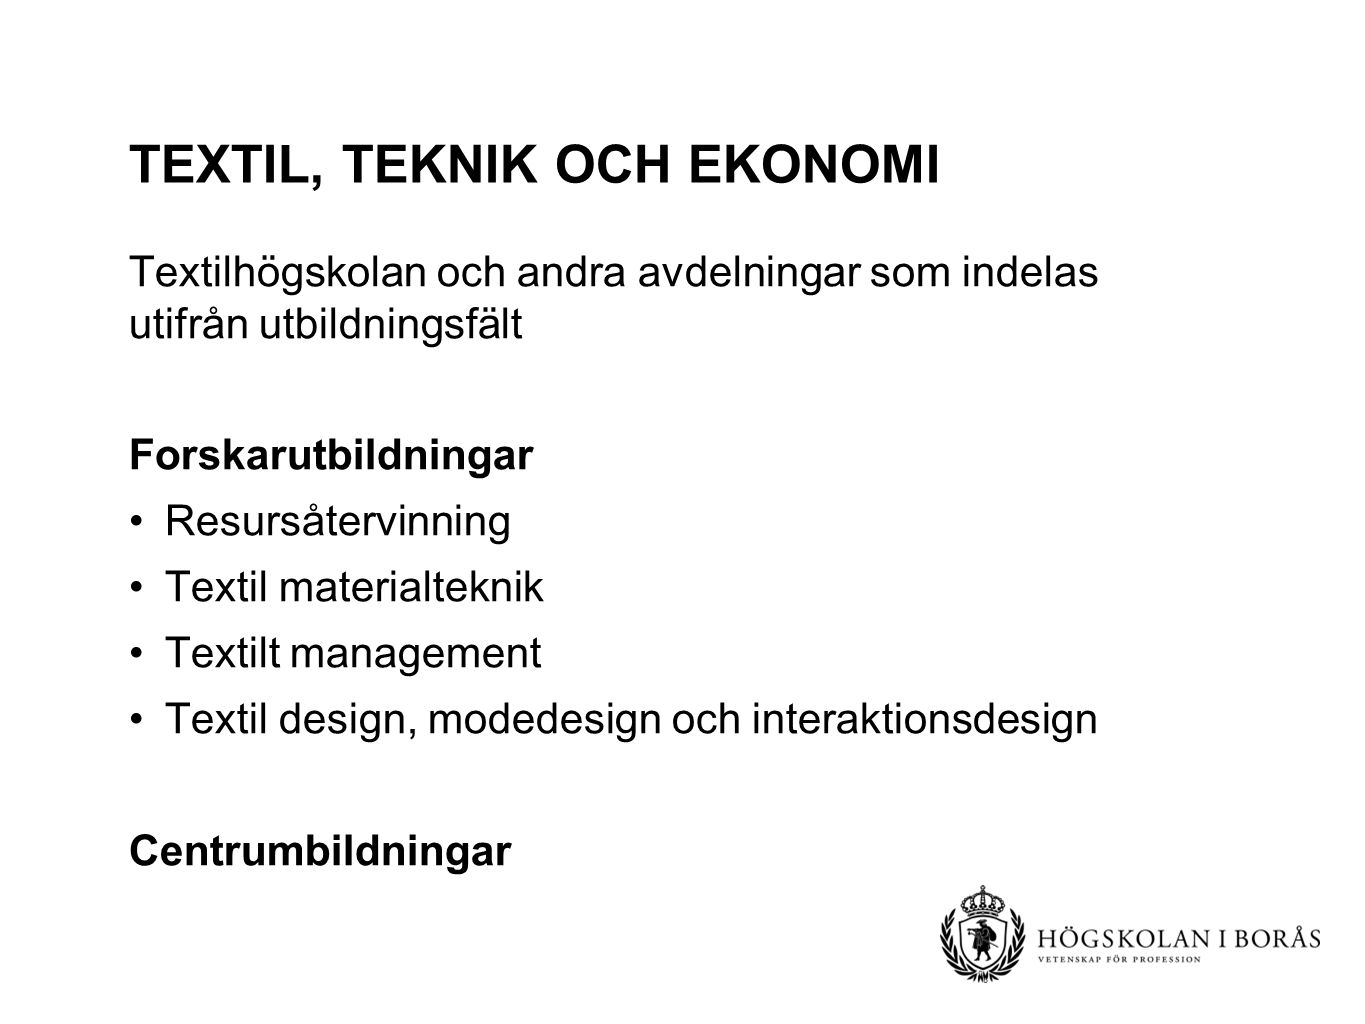 Textil, teknik och ekonomi